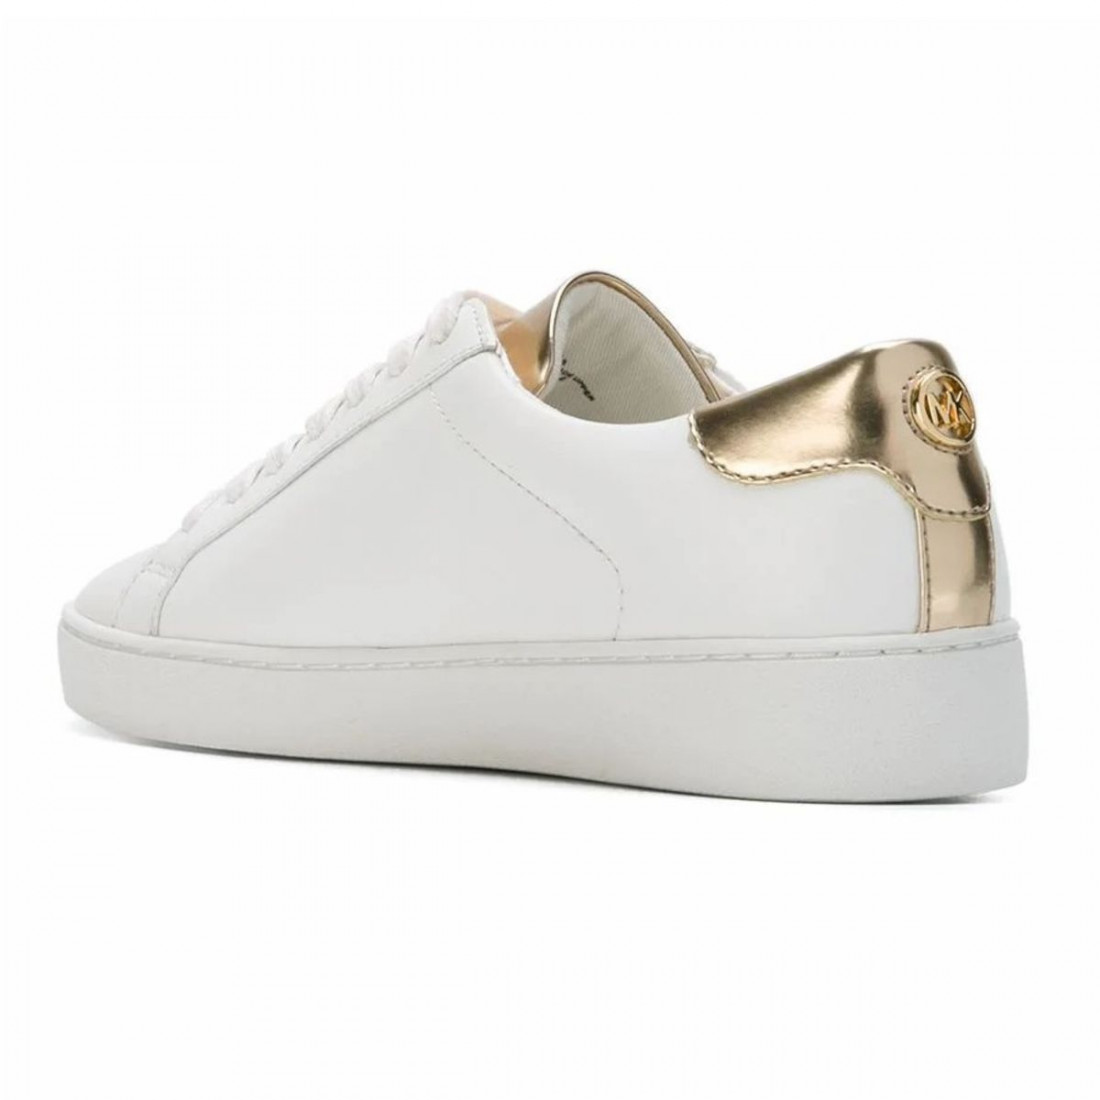 Sneaker donna Michael Kors Irving in pelle bianca e oro